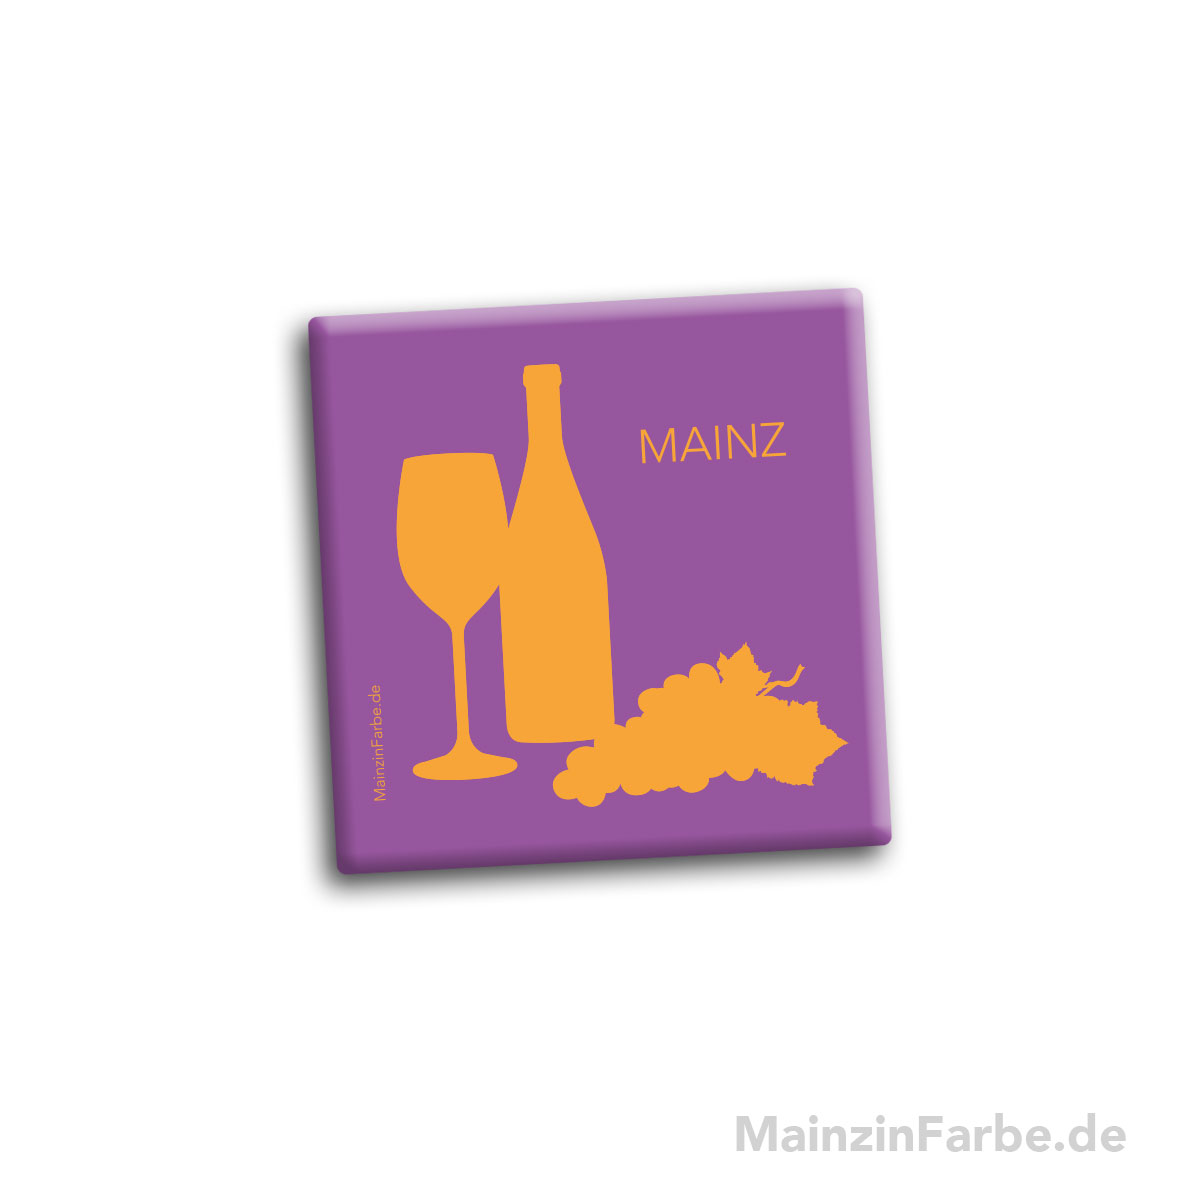 Magnet Kachel bunt, Mainzer Wein, lila-orange